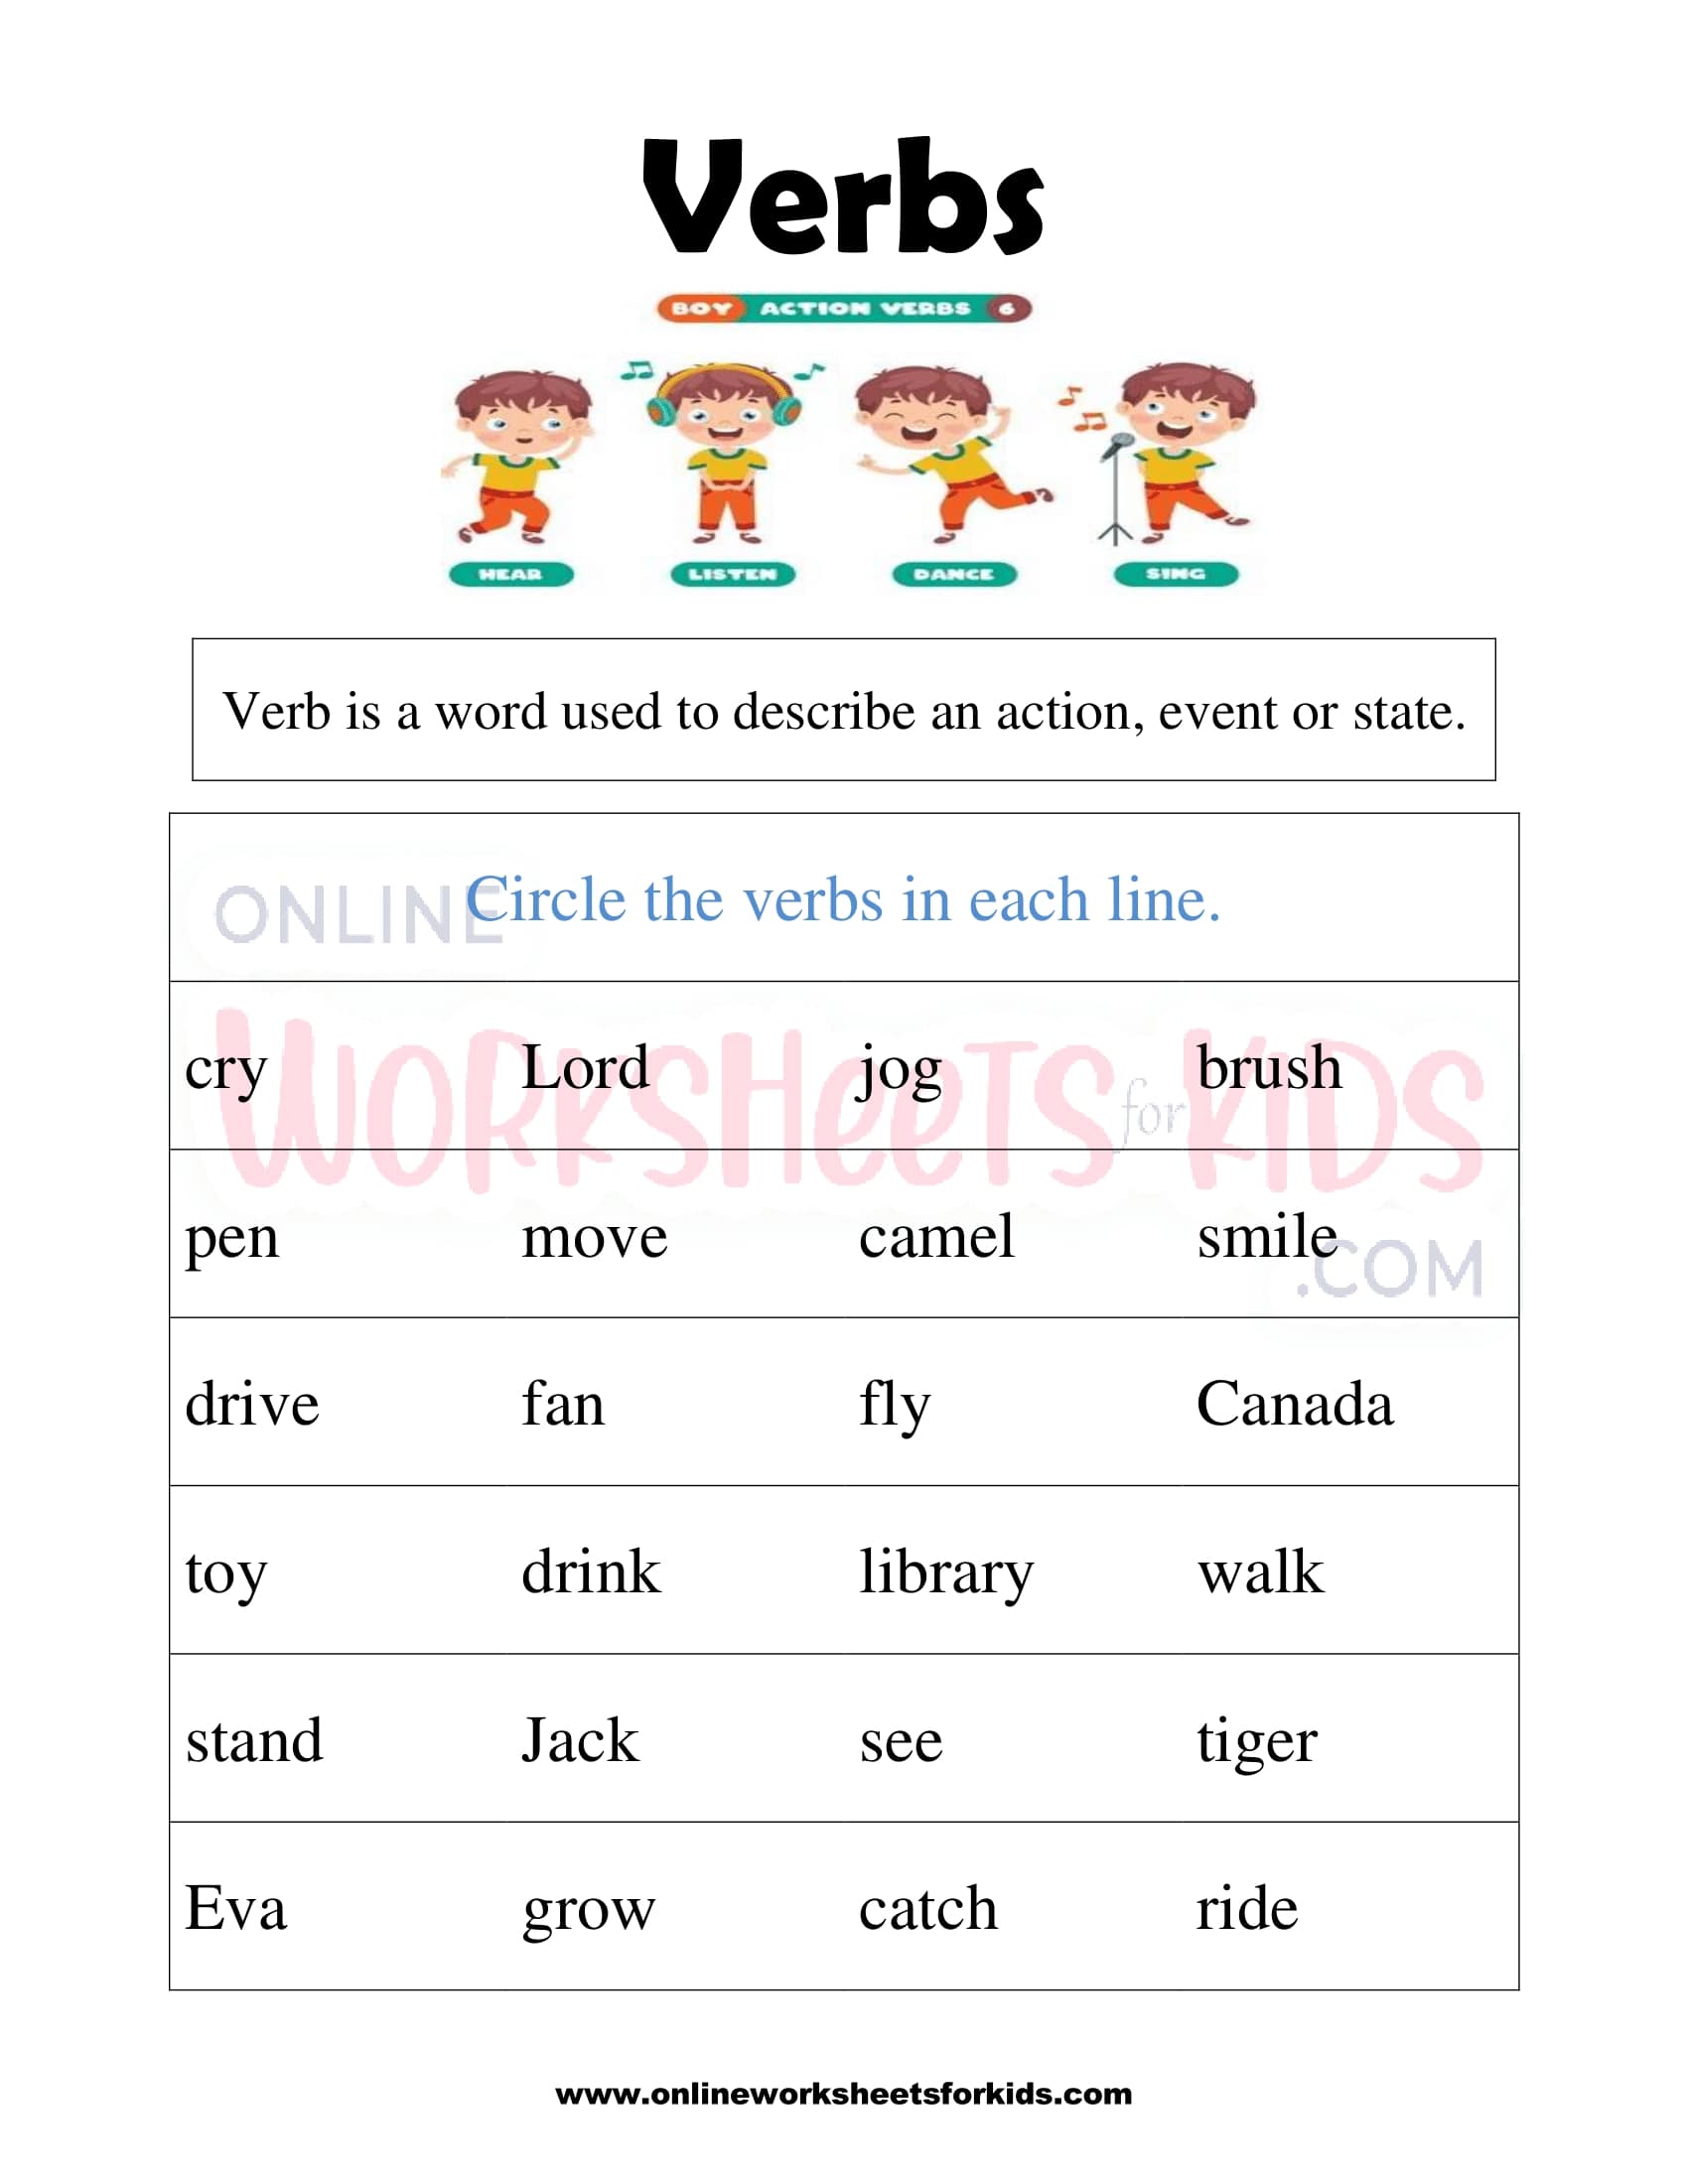 linking-verbs-activities